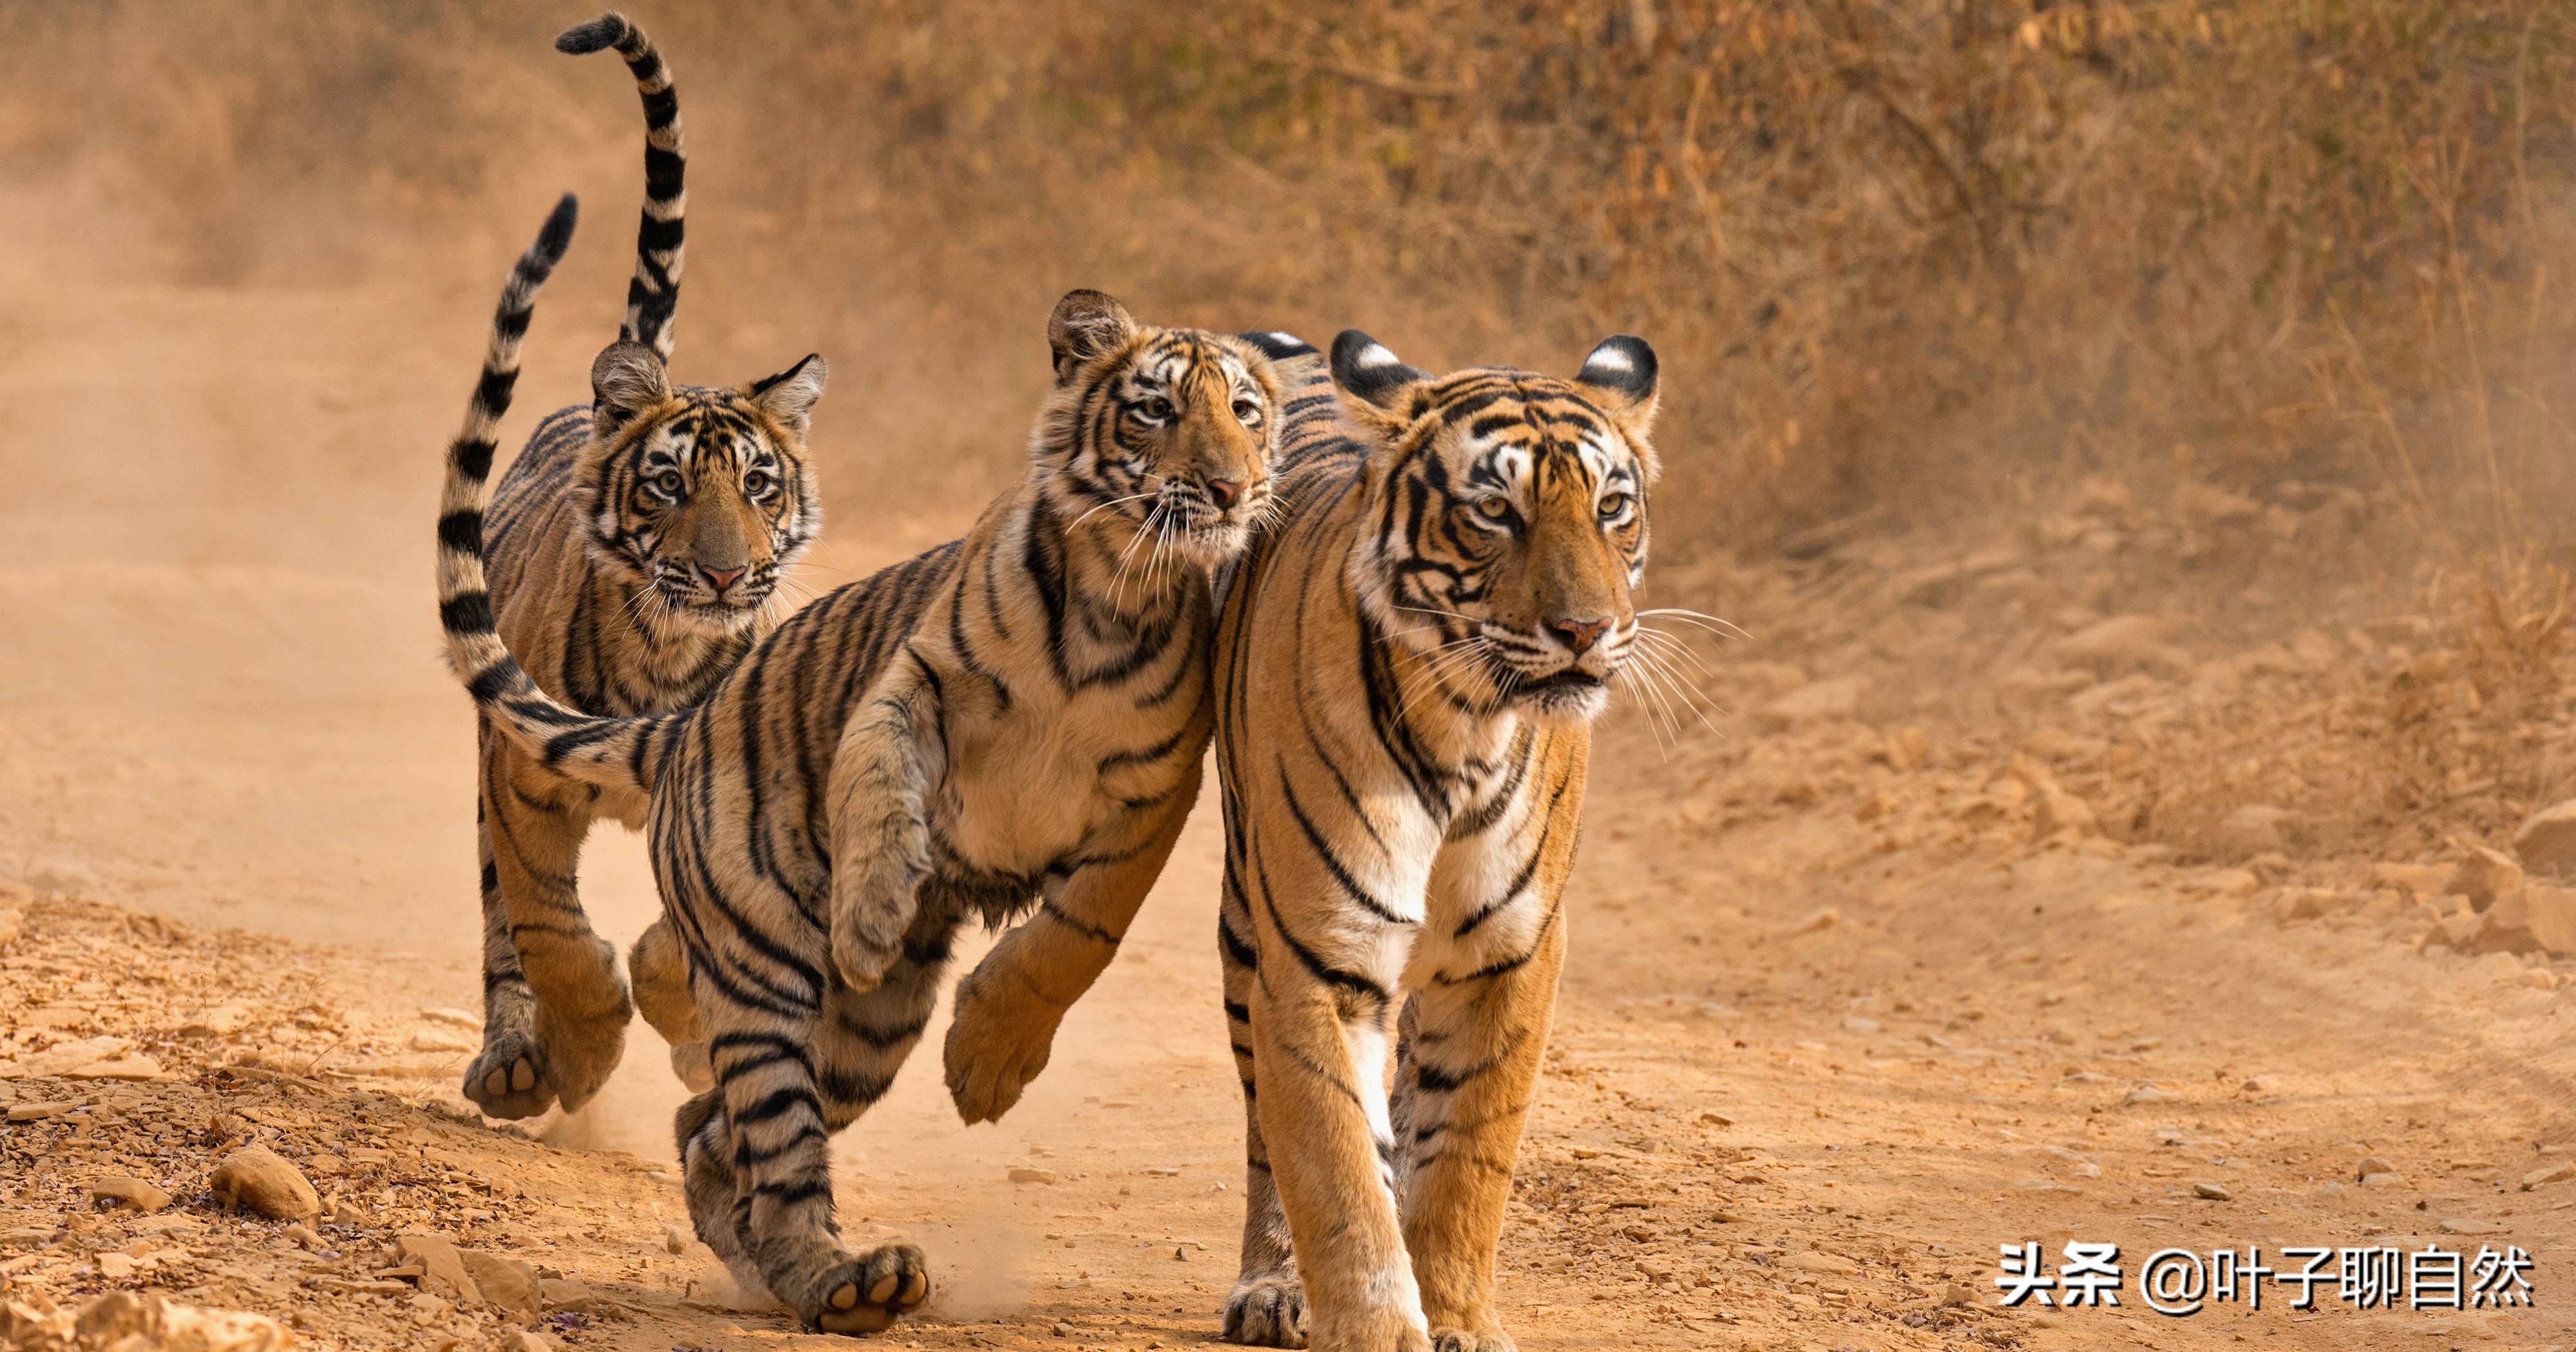 Tapety : Zwierząt, Tygrys, dzikiej przyrody, Języków, duże koty, ogród zoologiczny, wąsy, fauna ...